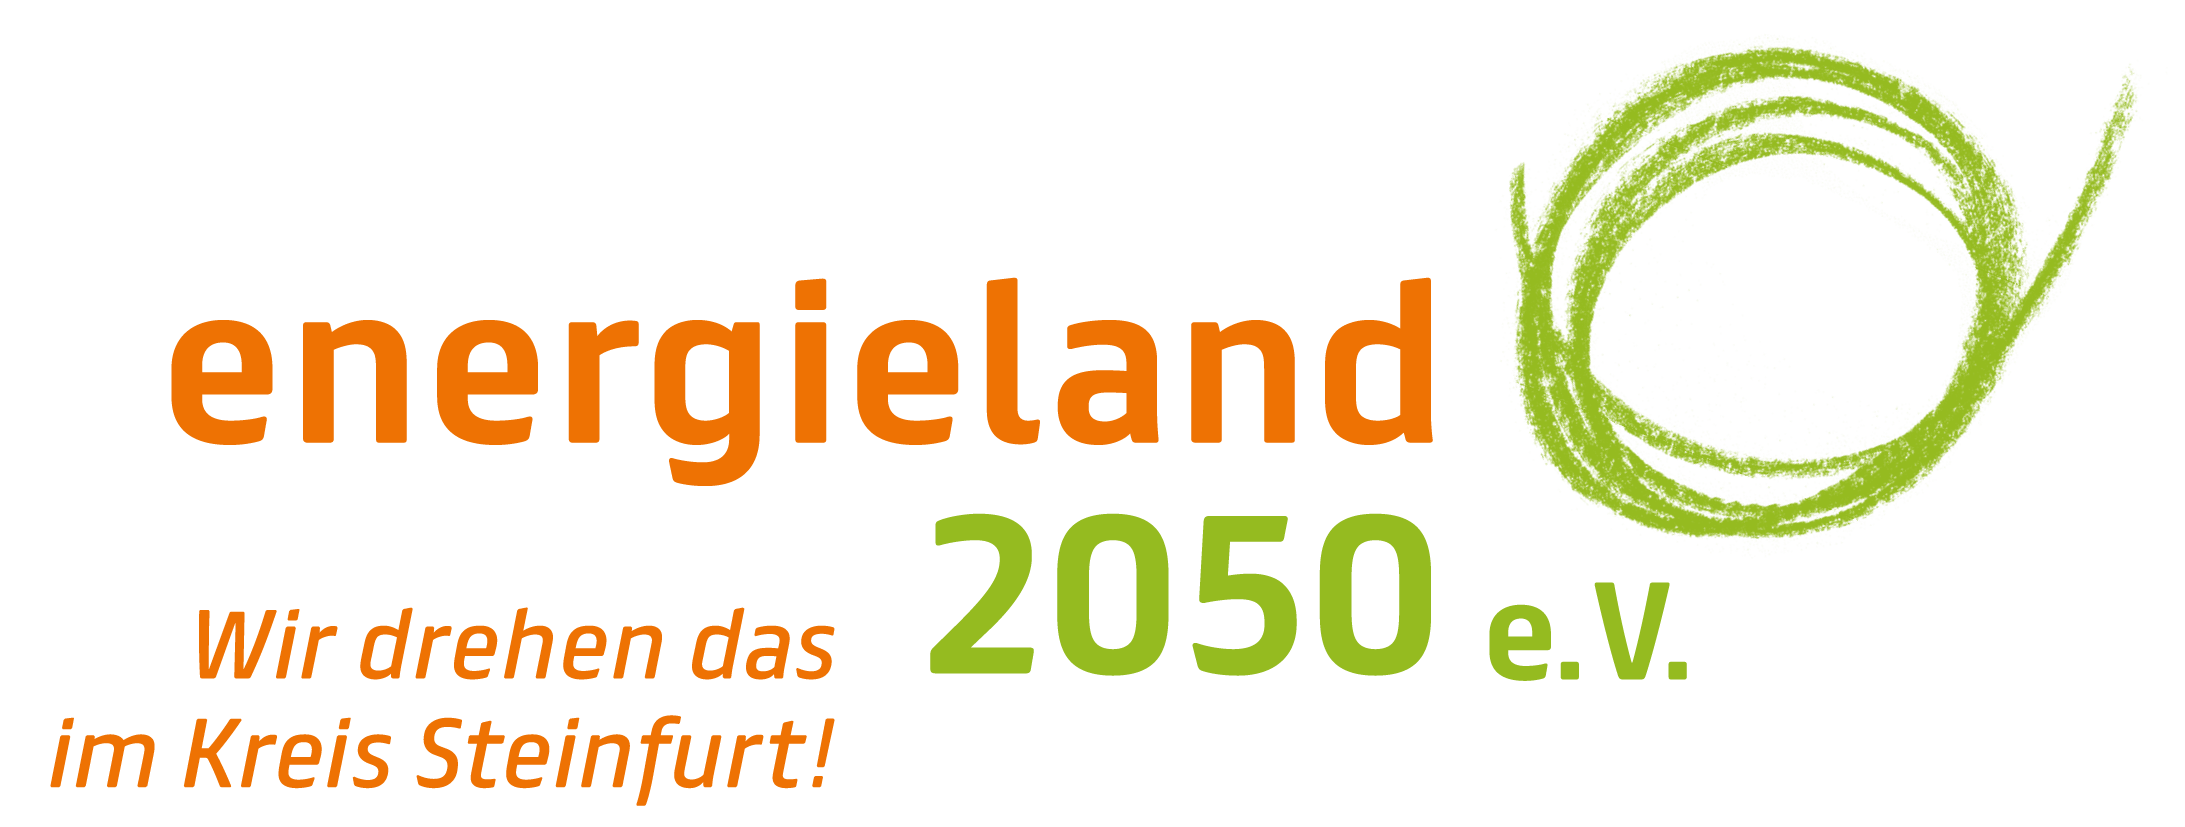 Logo energieland2050 e. V.